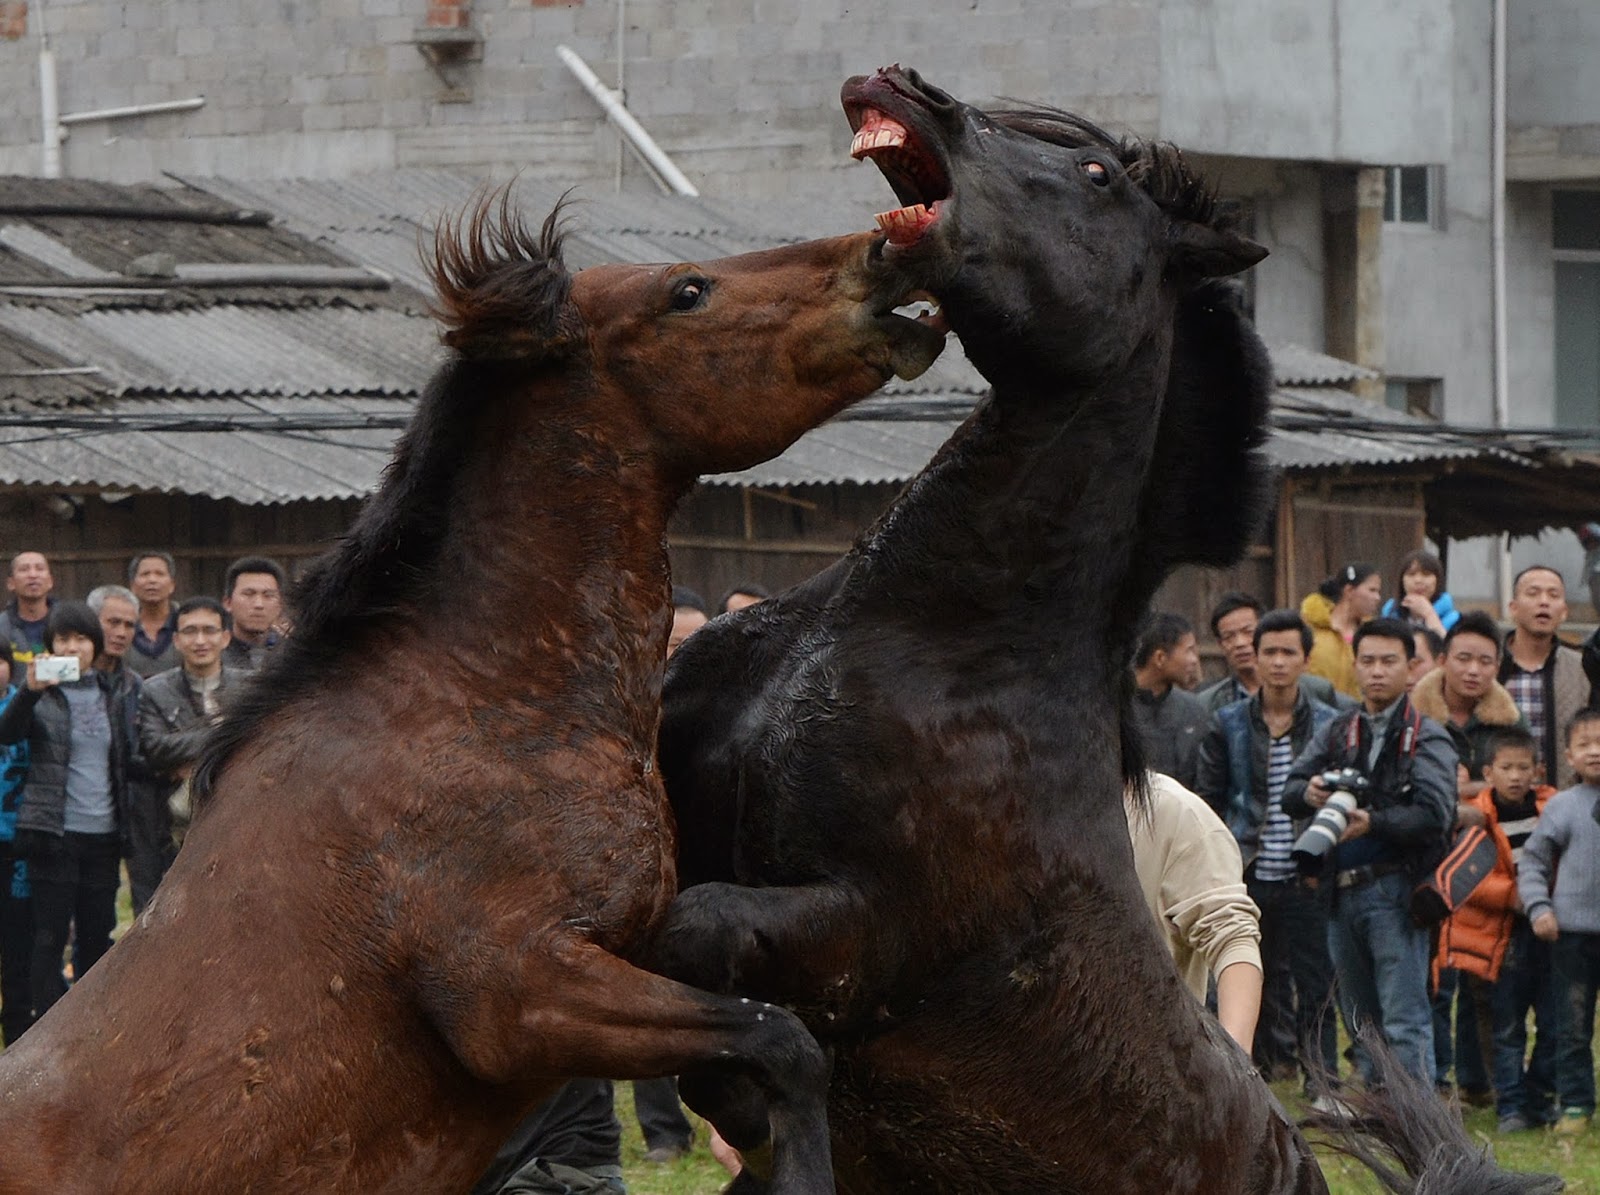 Blocking the horse. Лошади дерутся. Агрессивный конь.